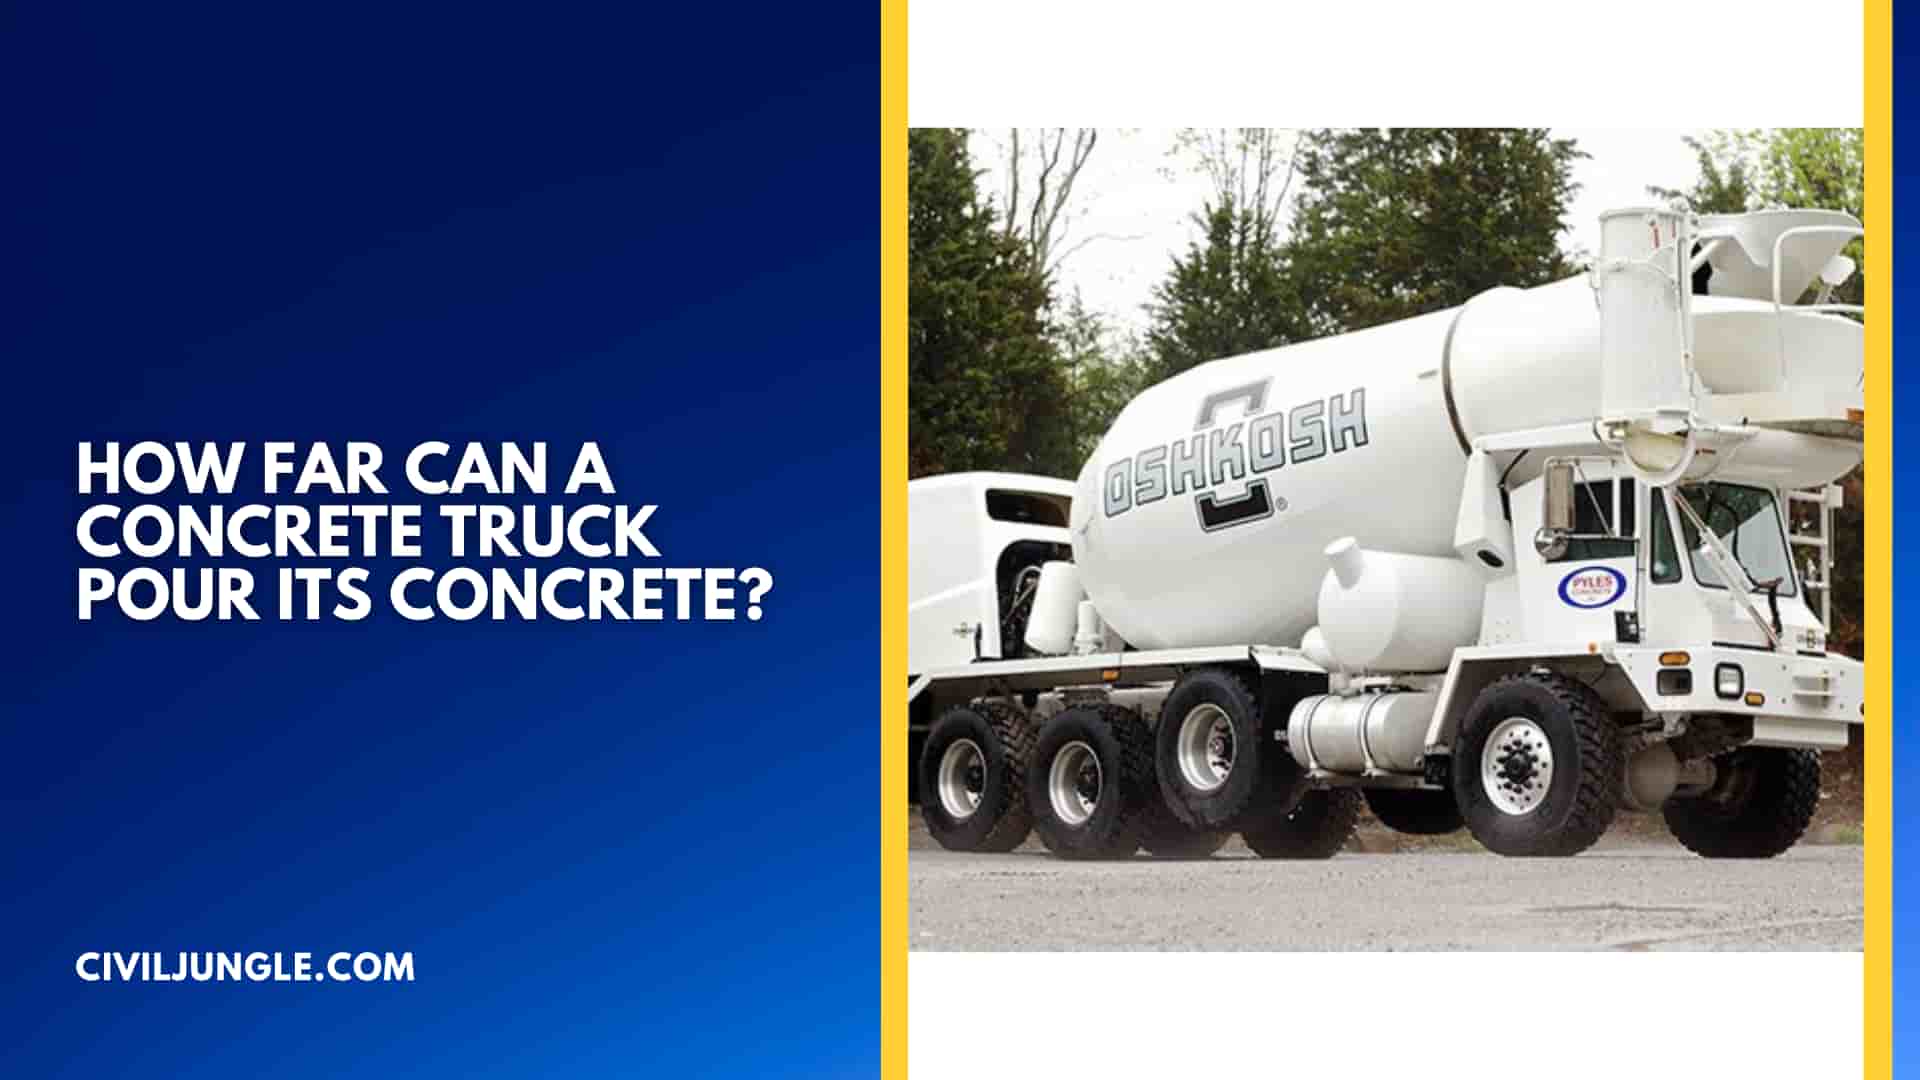 How Far Can a Concrete Truck Pour Its Concrete?